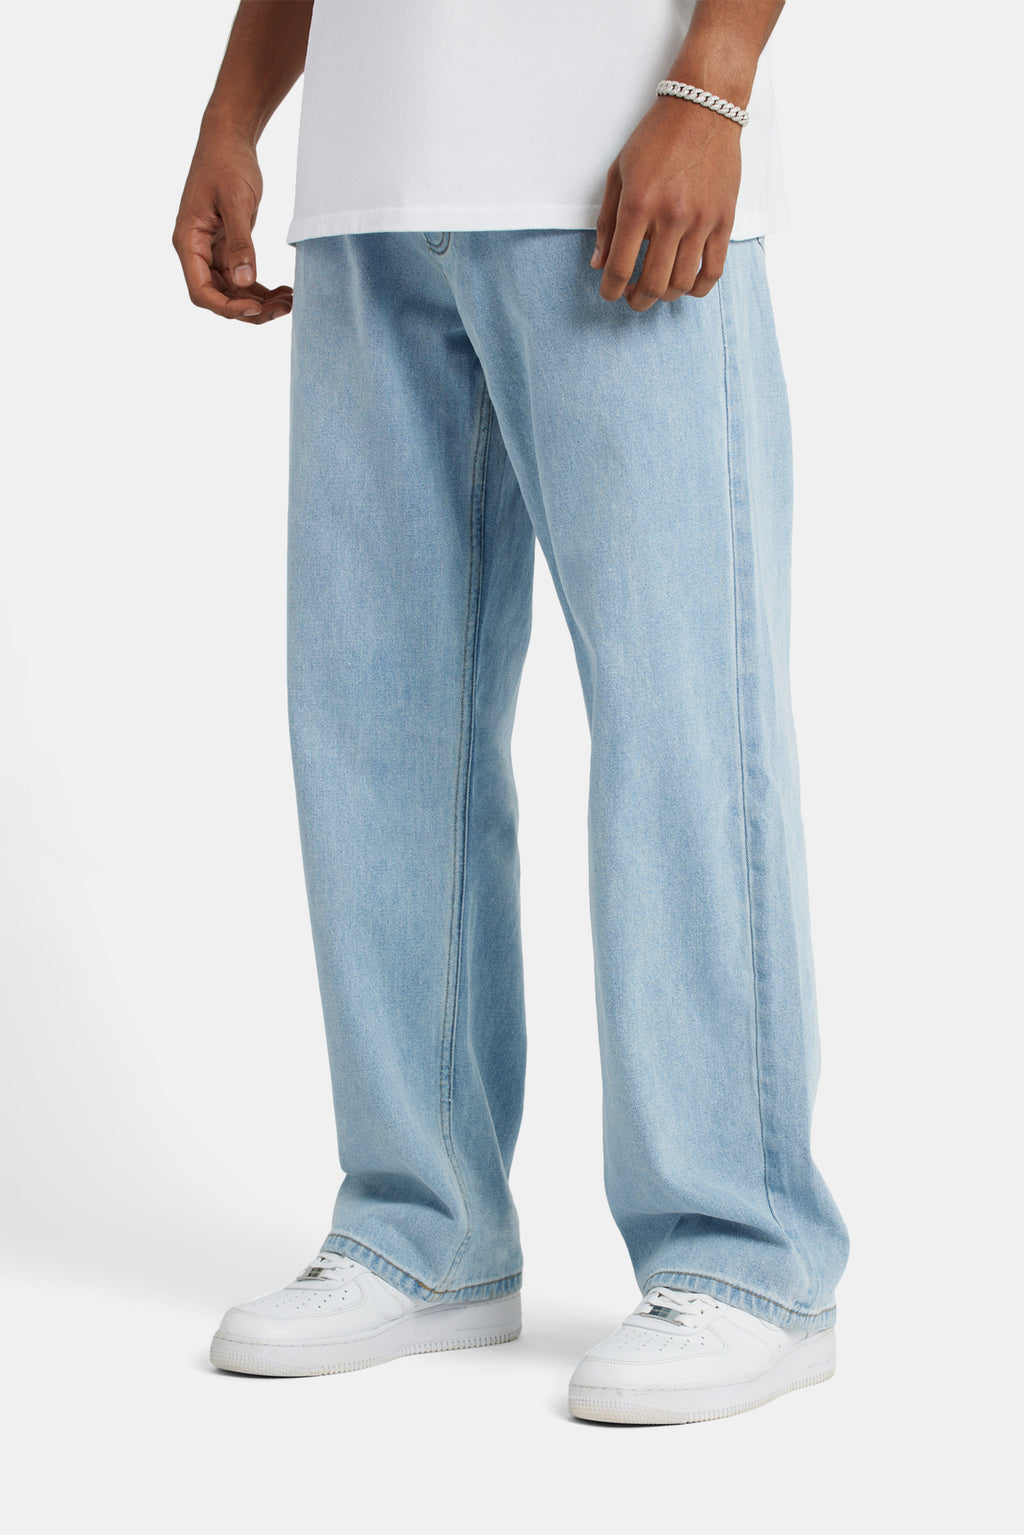 Baggy Fit Jeans - Light Blue | Mens Denim | Shop Jeans at CERNUCCI.COM ...